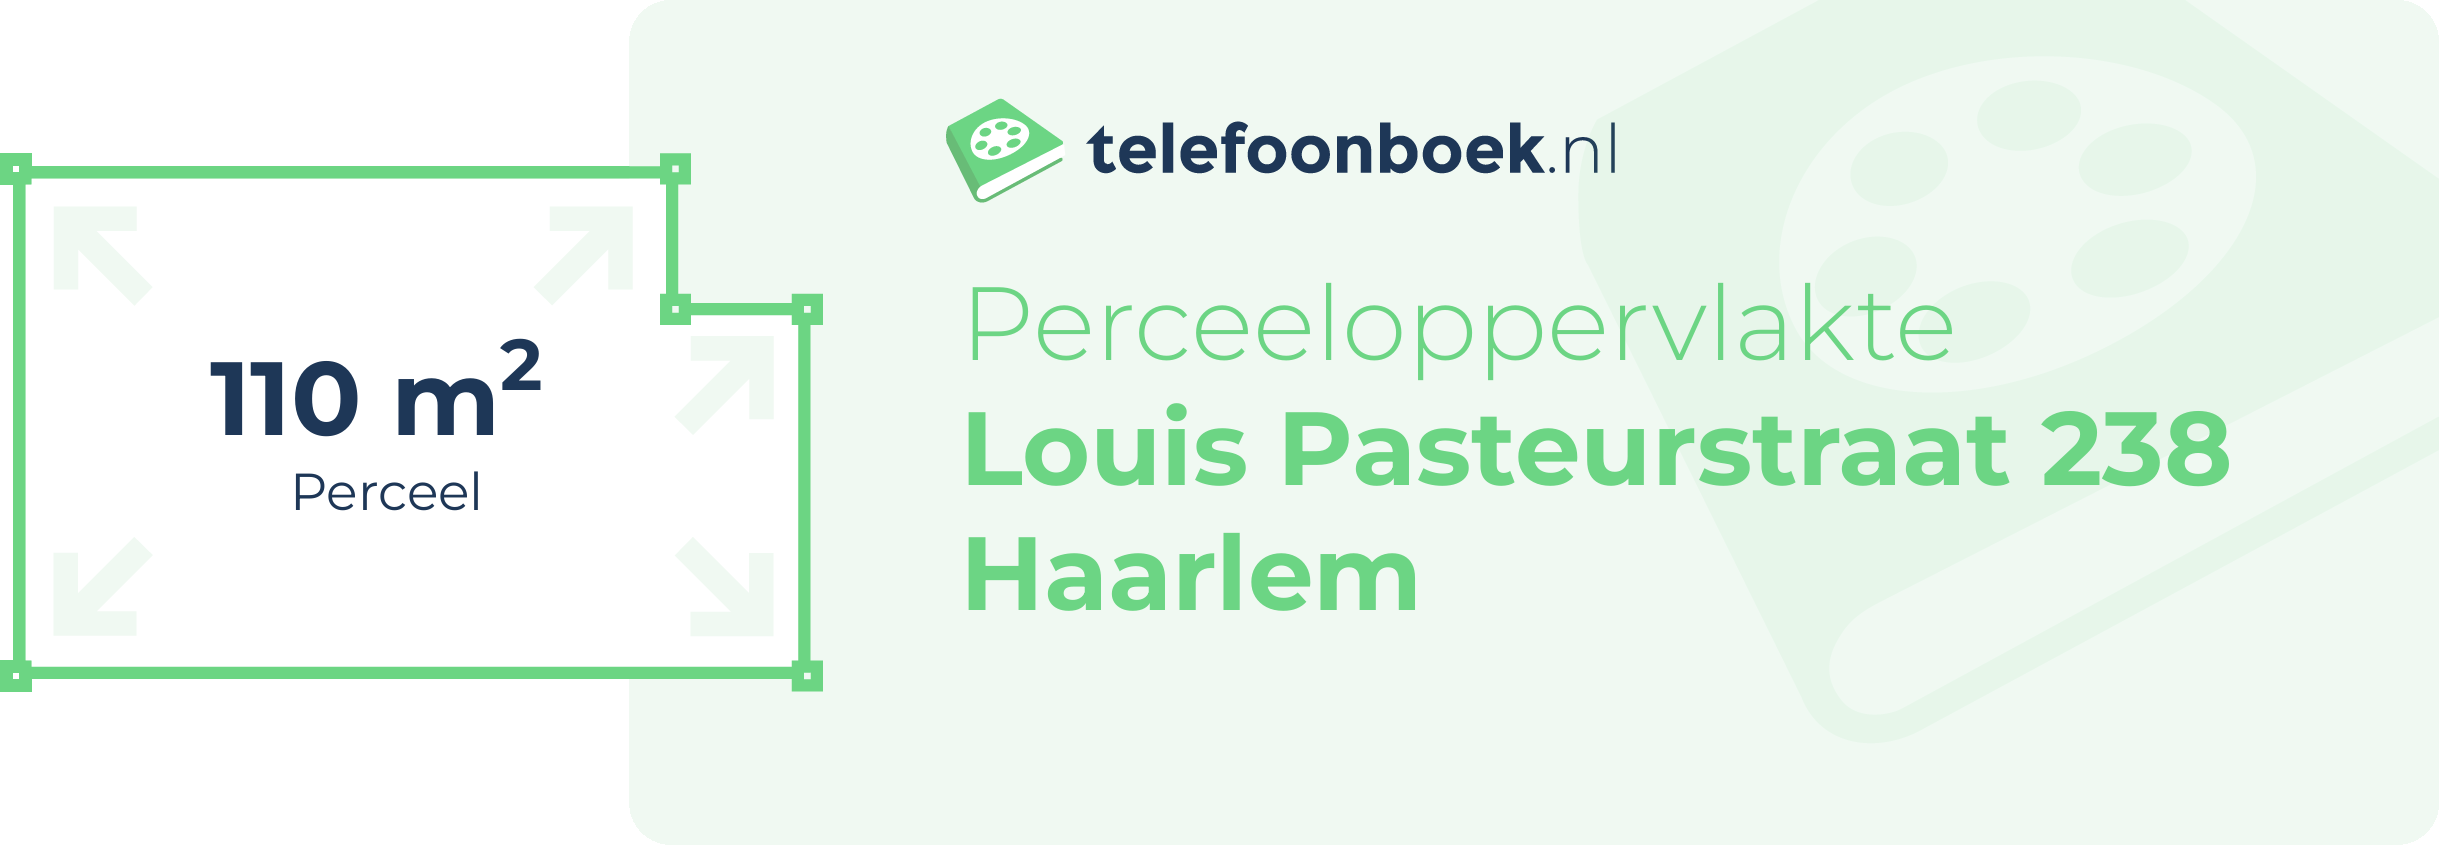 Perceeloppervlakte Louis Pasteurstraat 238 Haarlem